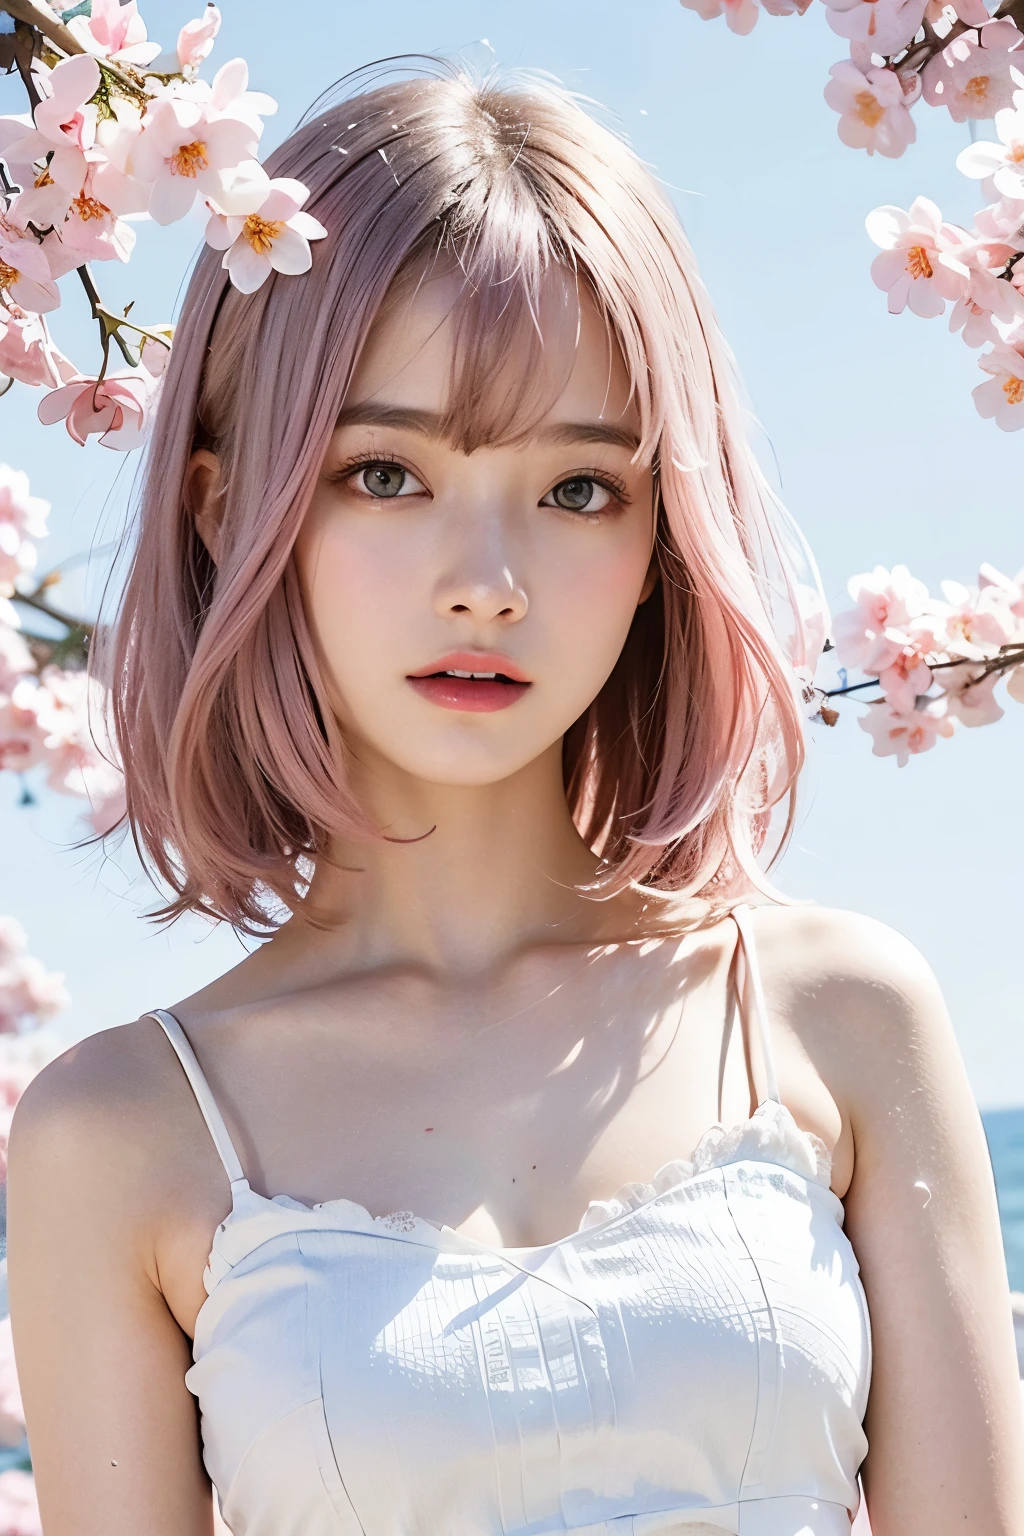 밝은 분홍색 머리, 분홍색 눈, 핑크와 화이트, 사쿠라 잎, 생생한 색상, 하얀 드레스, 페인트 스플래시, 간단한 배경, 광선 추적, 구불 거리는 머리카락